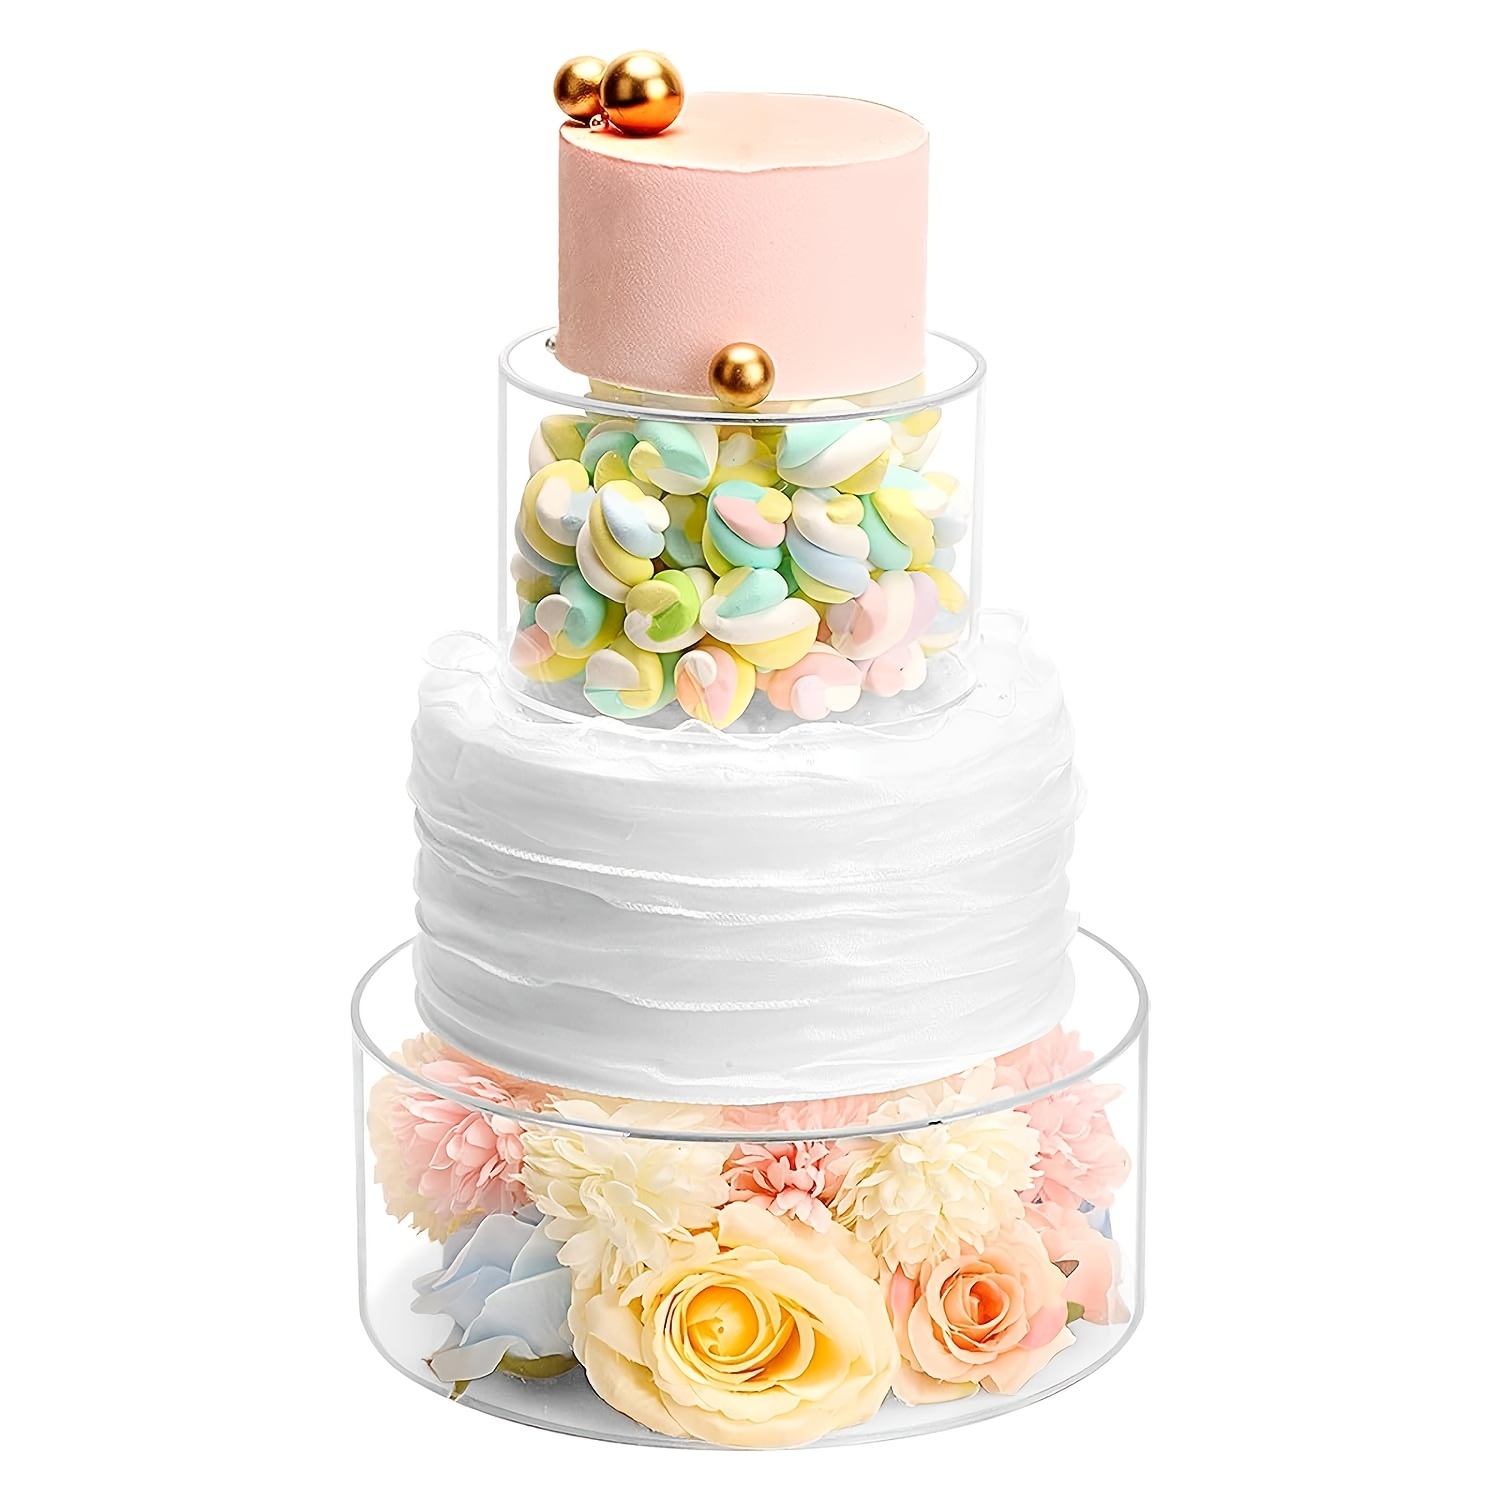 Plateau à gâteau en Acrylique | Piédestal à gâteau cylindrique Rond en  Acrylique Transparent - Présentoir gâteau piédestal pour Le Mariage, la  fête